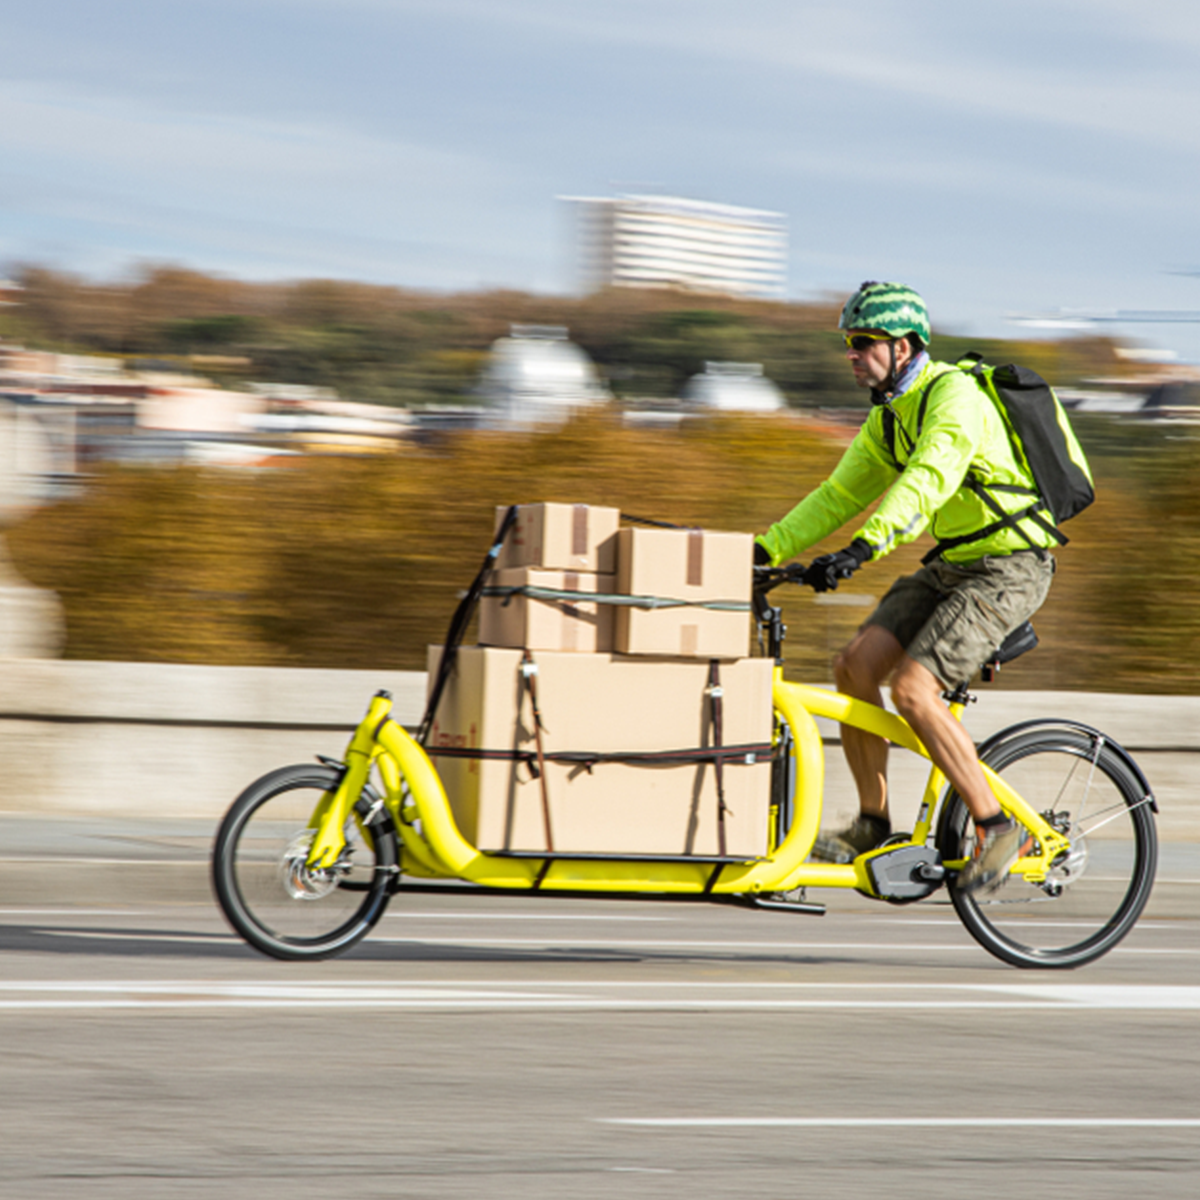 La logistique urbaine - coursier à vélo - Etyo